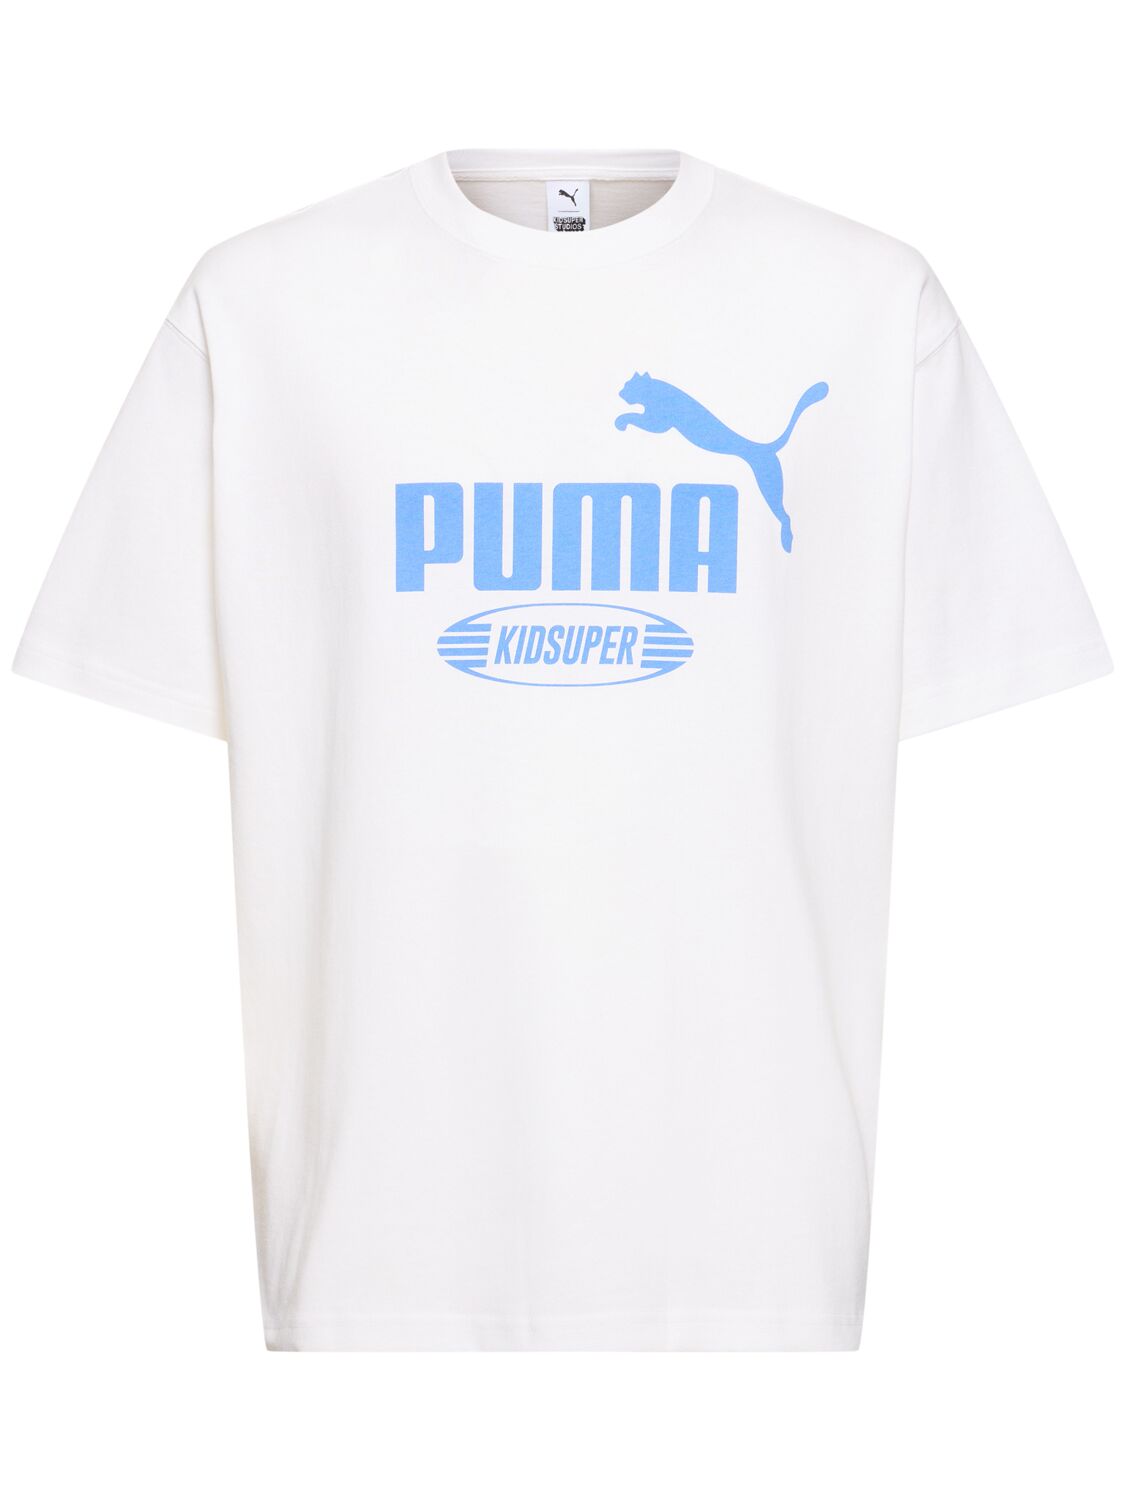 Puma Kidsuper Studios Logo T恤 In  White